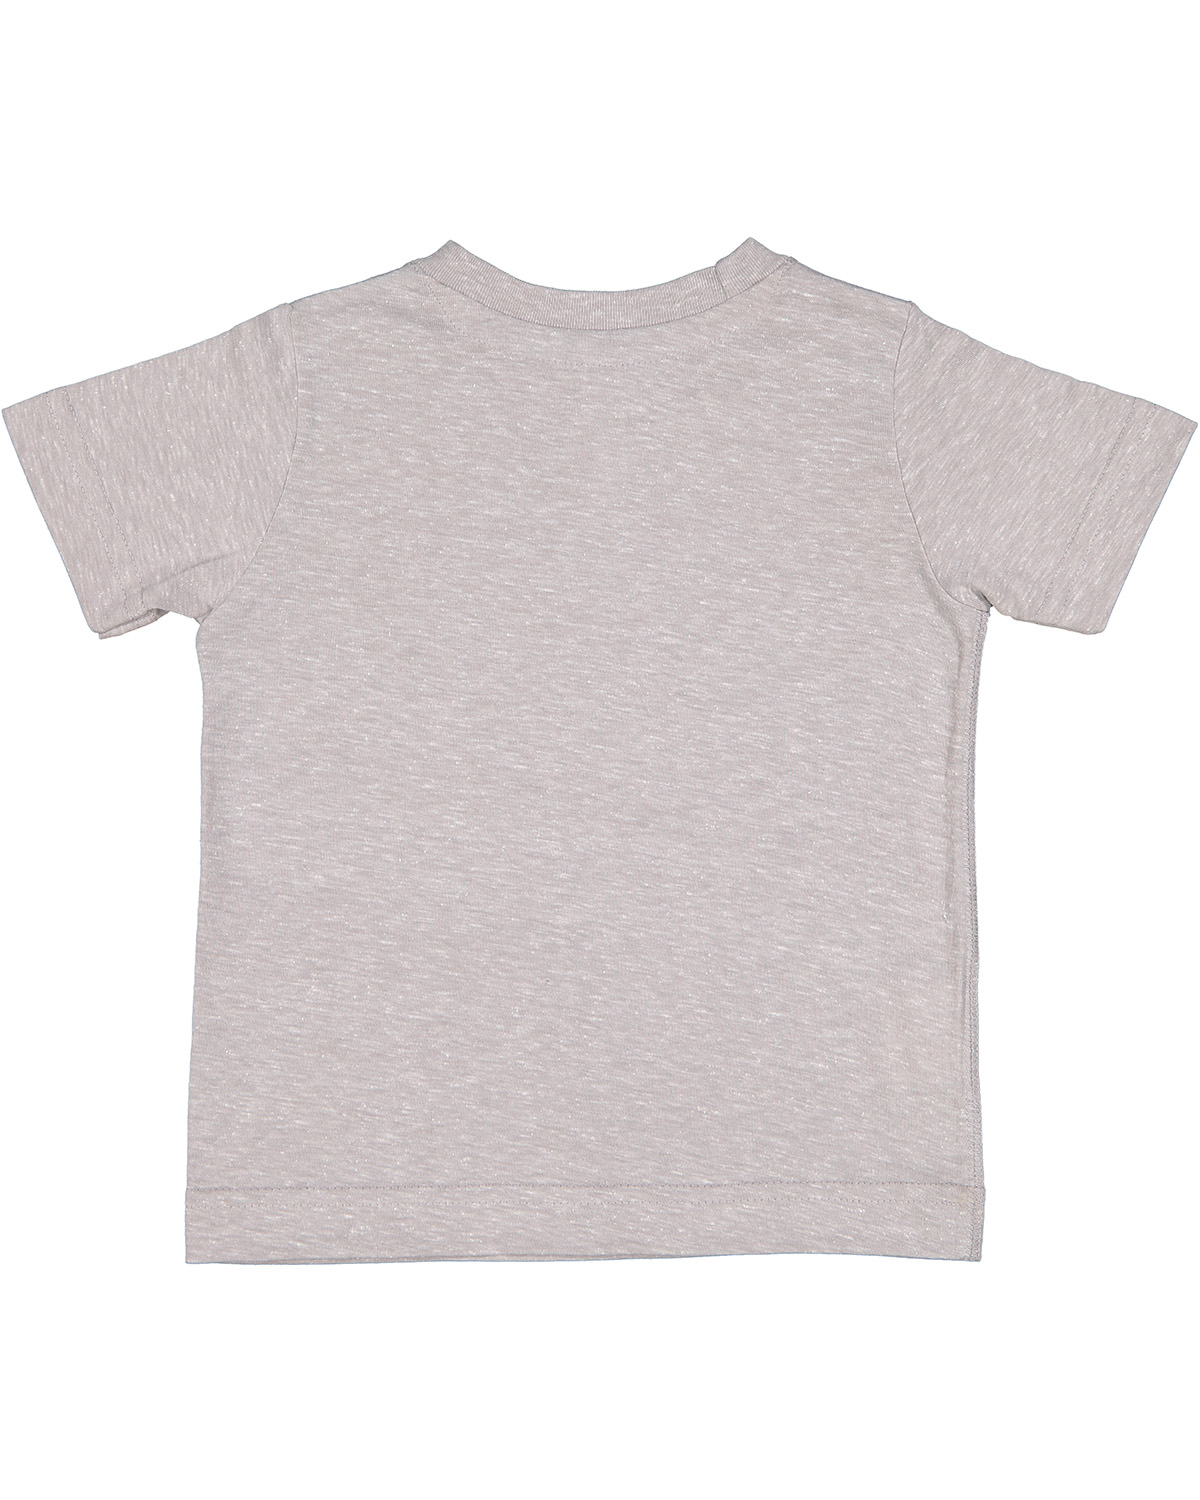 Rabbit Skins 3391 | Toddler Harborside Melange Jersey T-Shirt | ShirtSpace